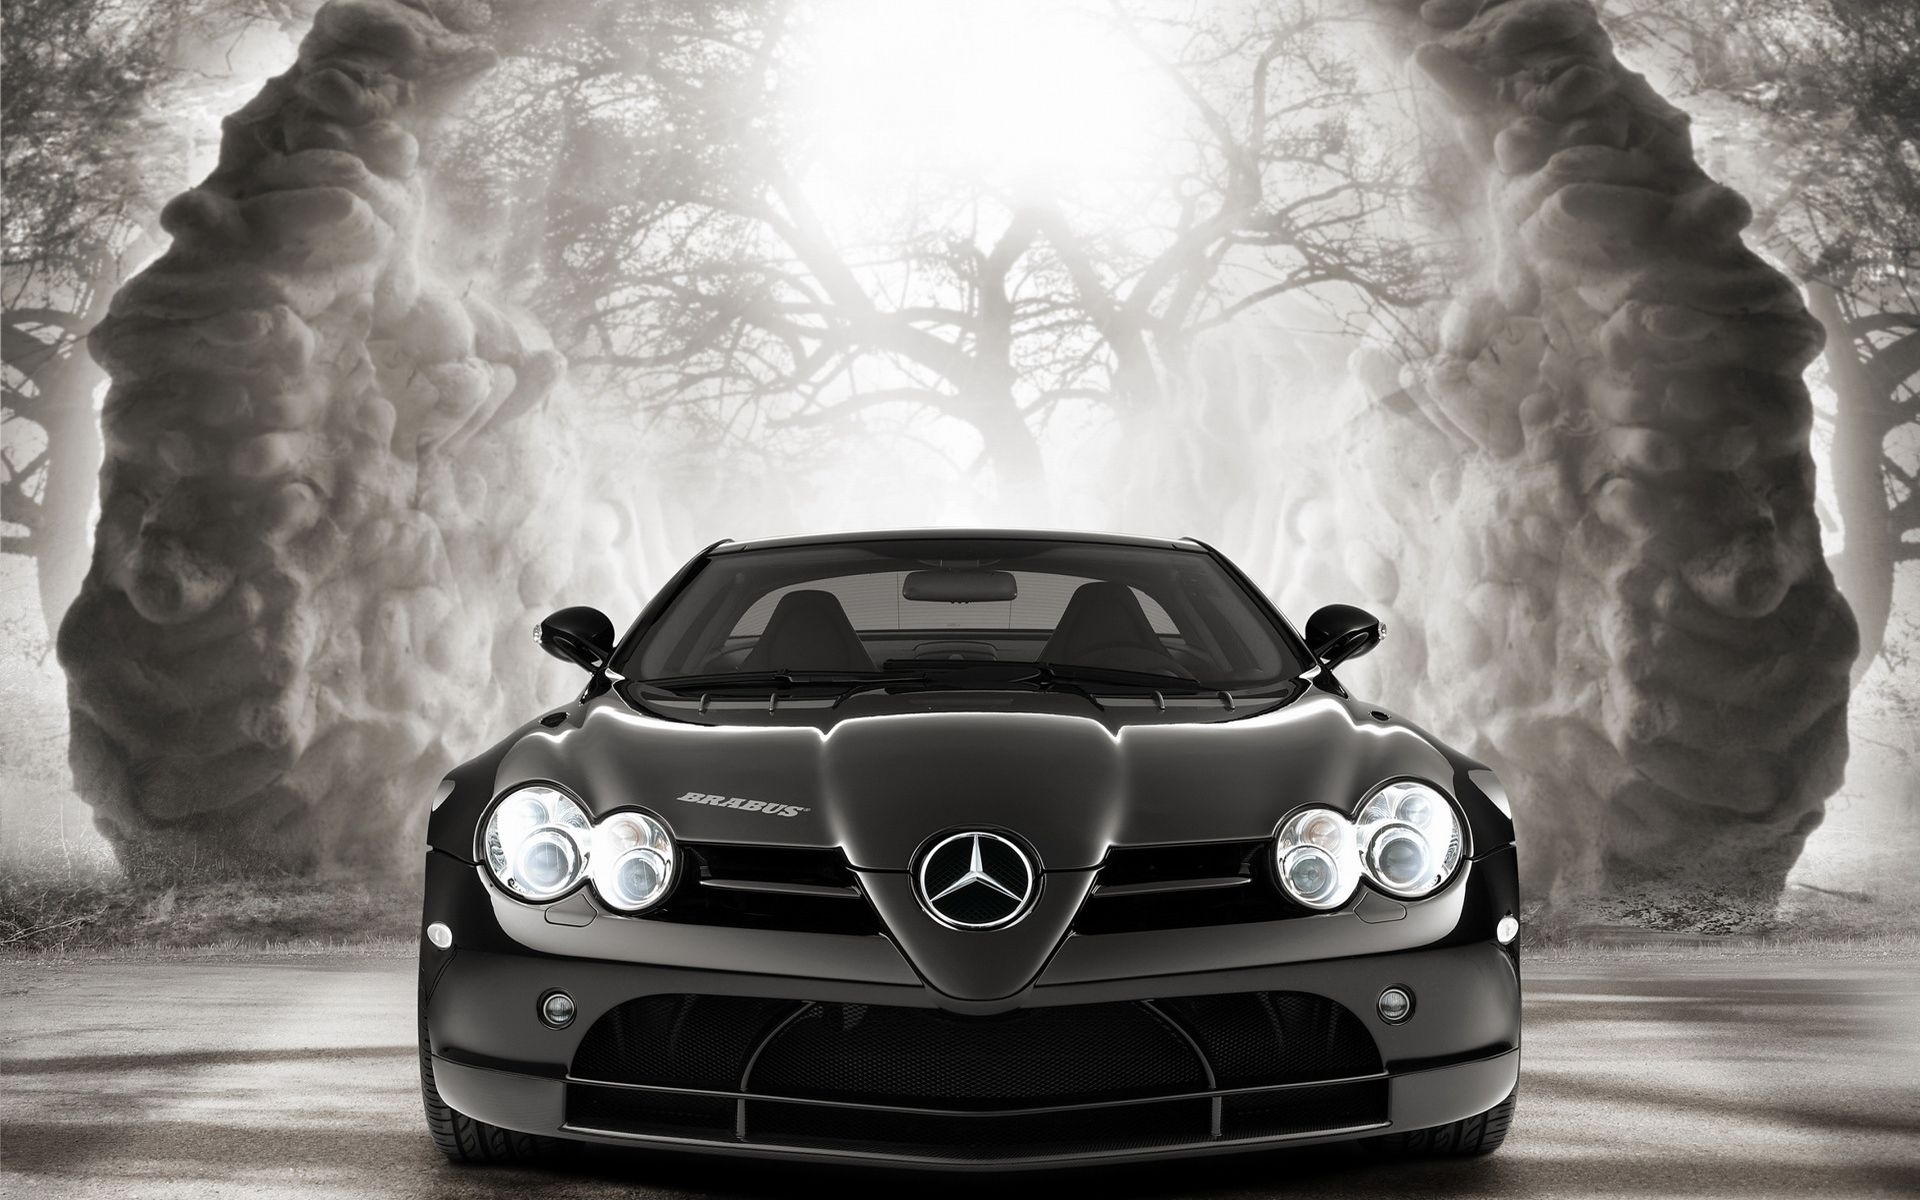 Descarga gratuita de fondo de pantalla para móvil de Automóvil, Mercedes, Transporte, Imágenes.